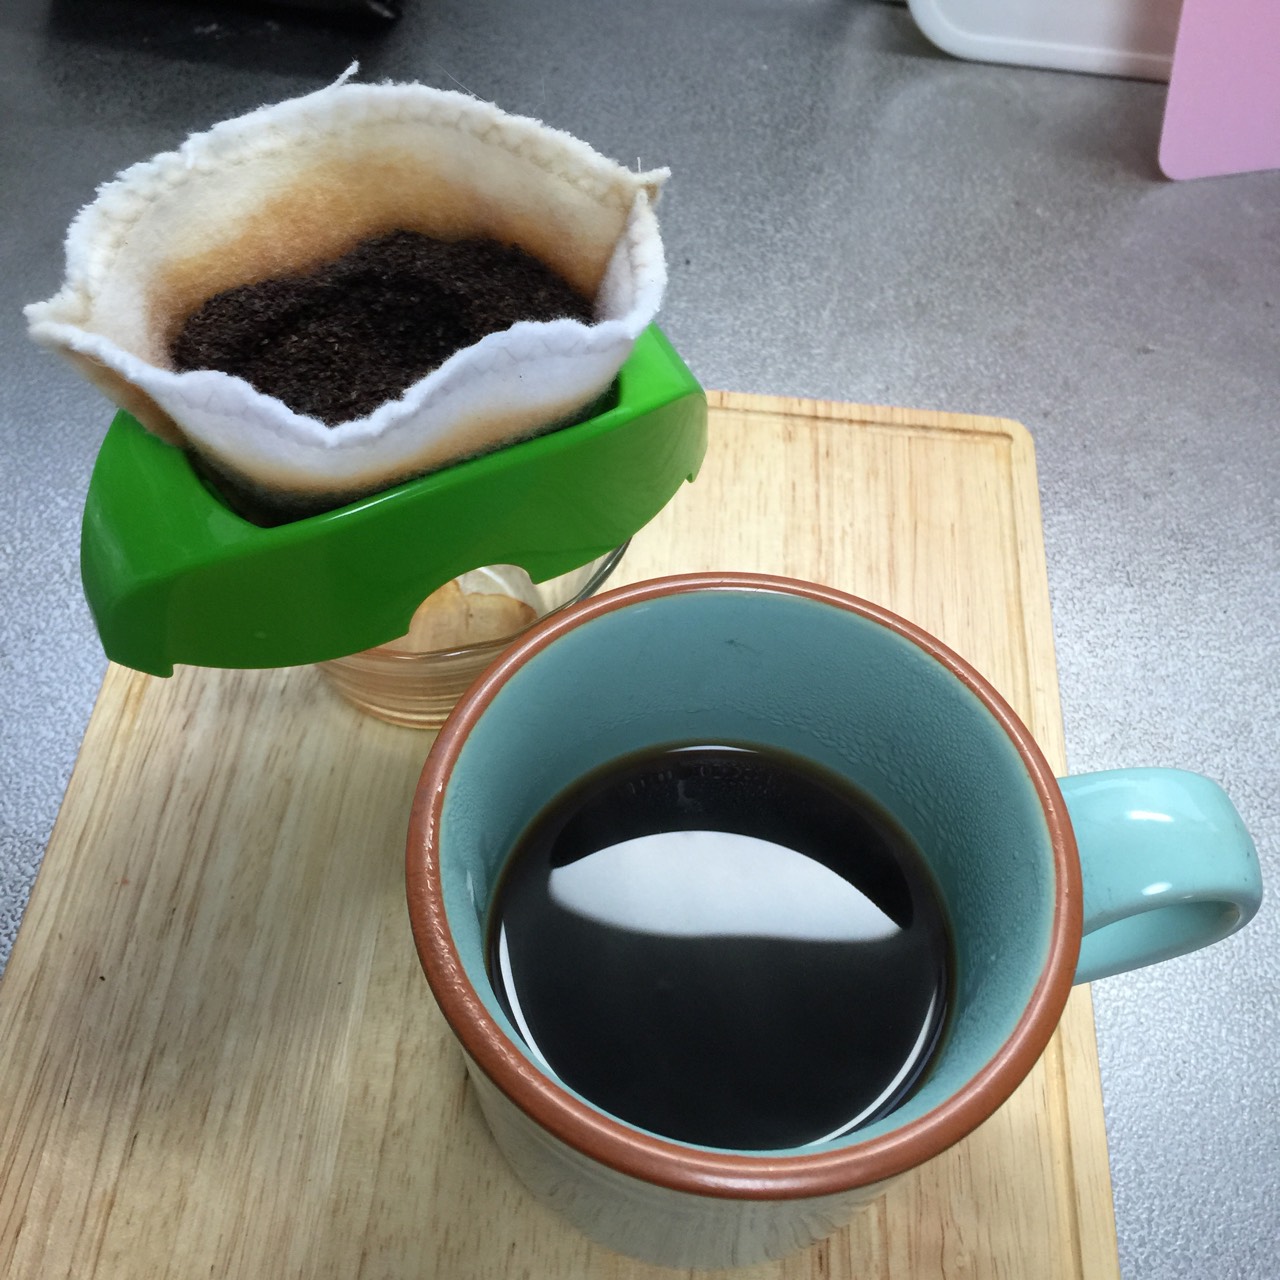 ネル生地で繰り返し洗って使えるコーヒー用フィルターを製作。コーヒー 